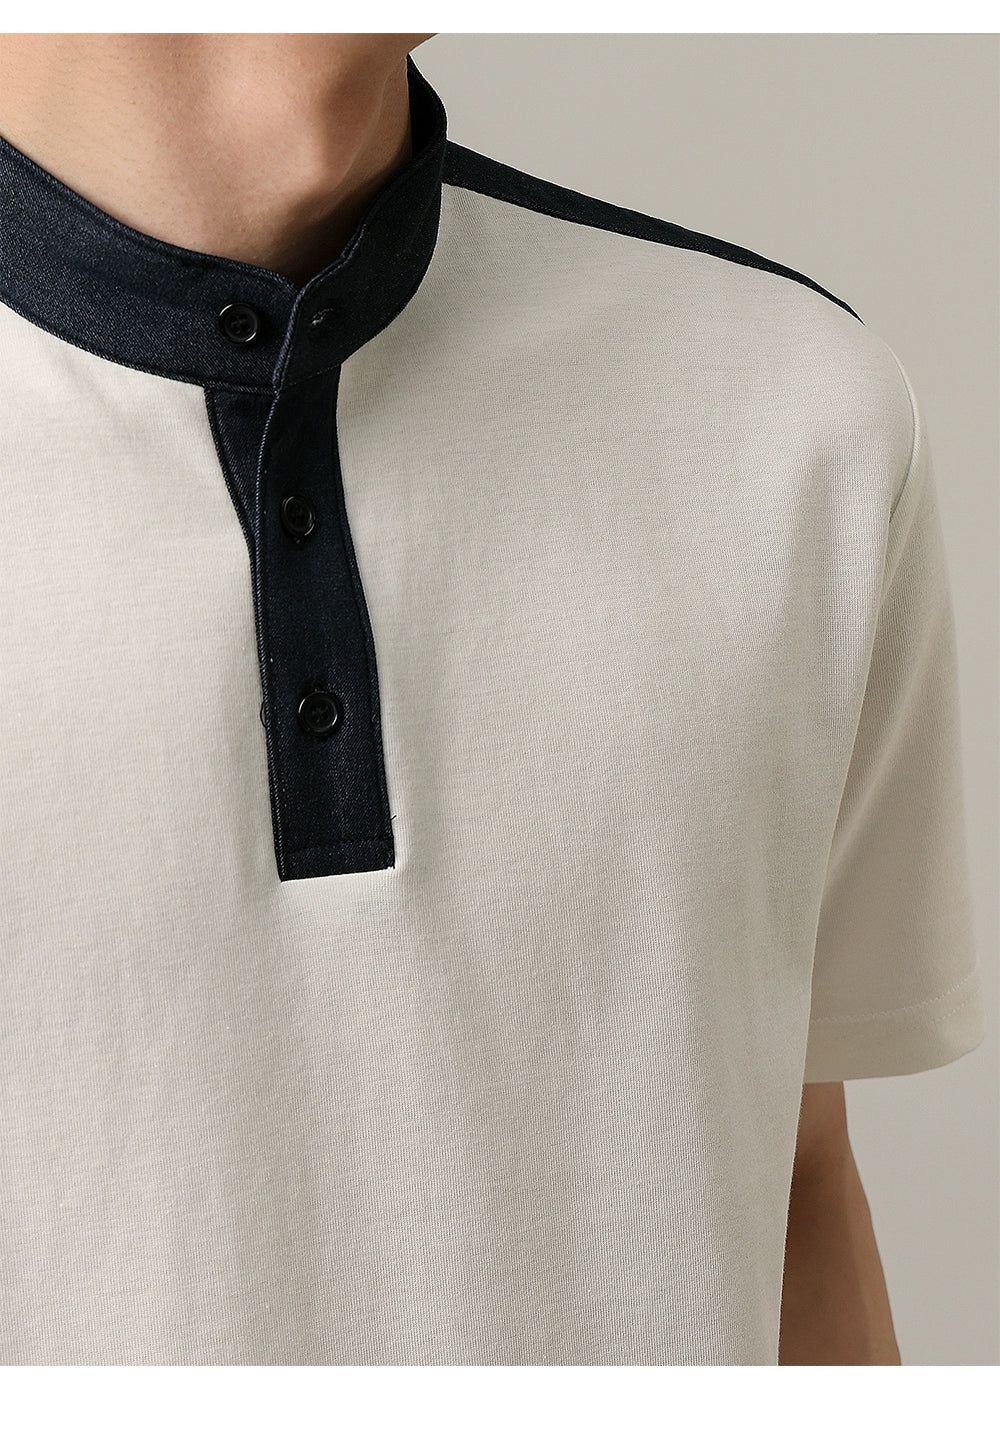 Zhou Outline Half Button T-Shirt-korean-fashion-T-Shirt-Zhou's Closet-OH Garments